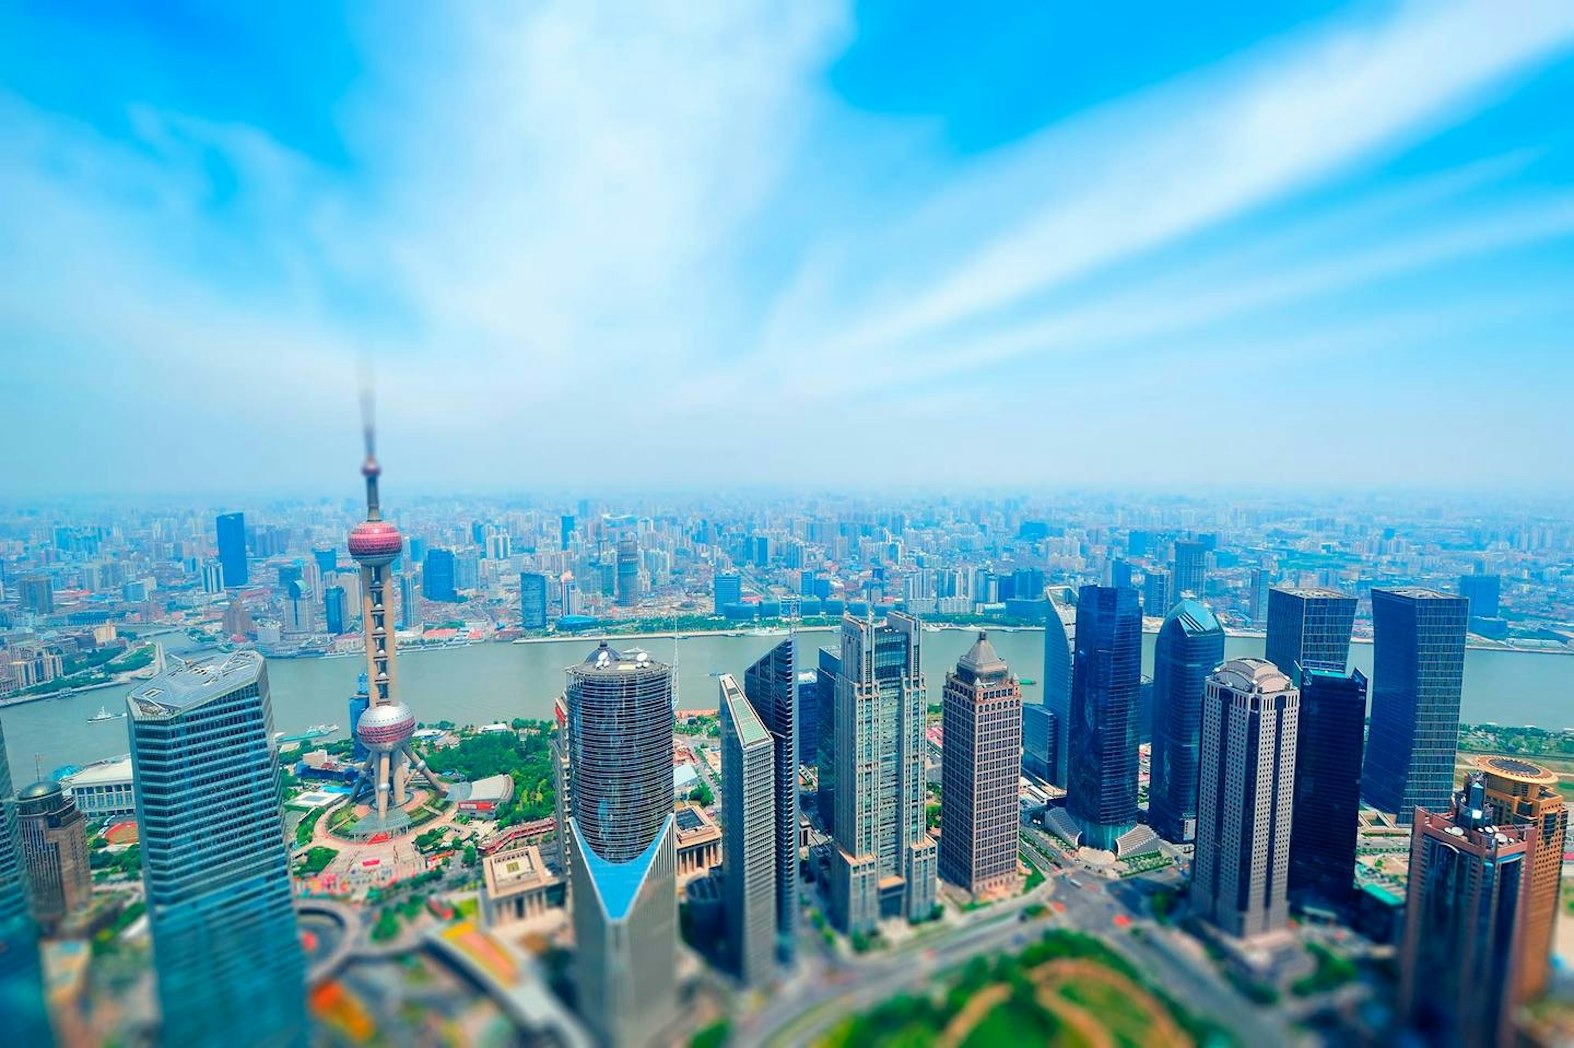 SPEEDAログイン画面でも使用している、上海上空から撮影した写真です